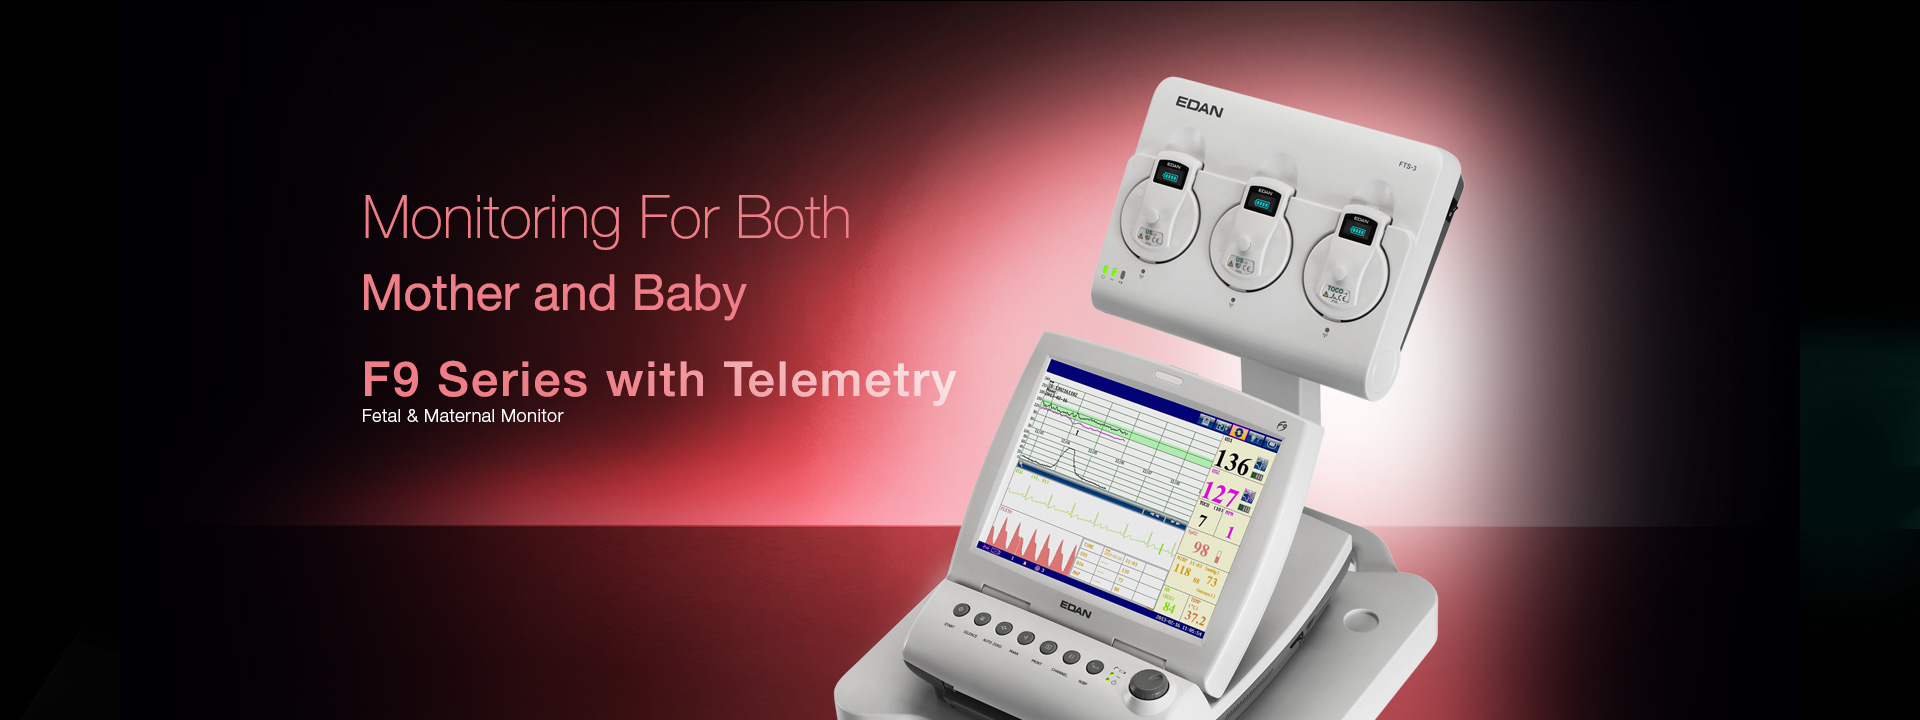 เครื่องตรวจสมรรถภาพทารกในครรภ์สำหรับตรวจเด็กแฝด  F9 Series with FTS-3  EDAN